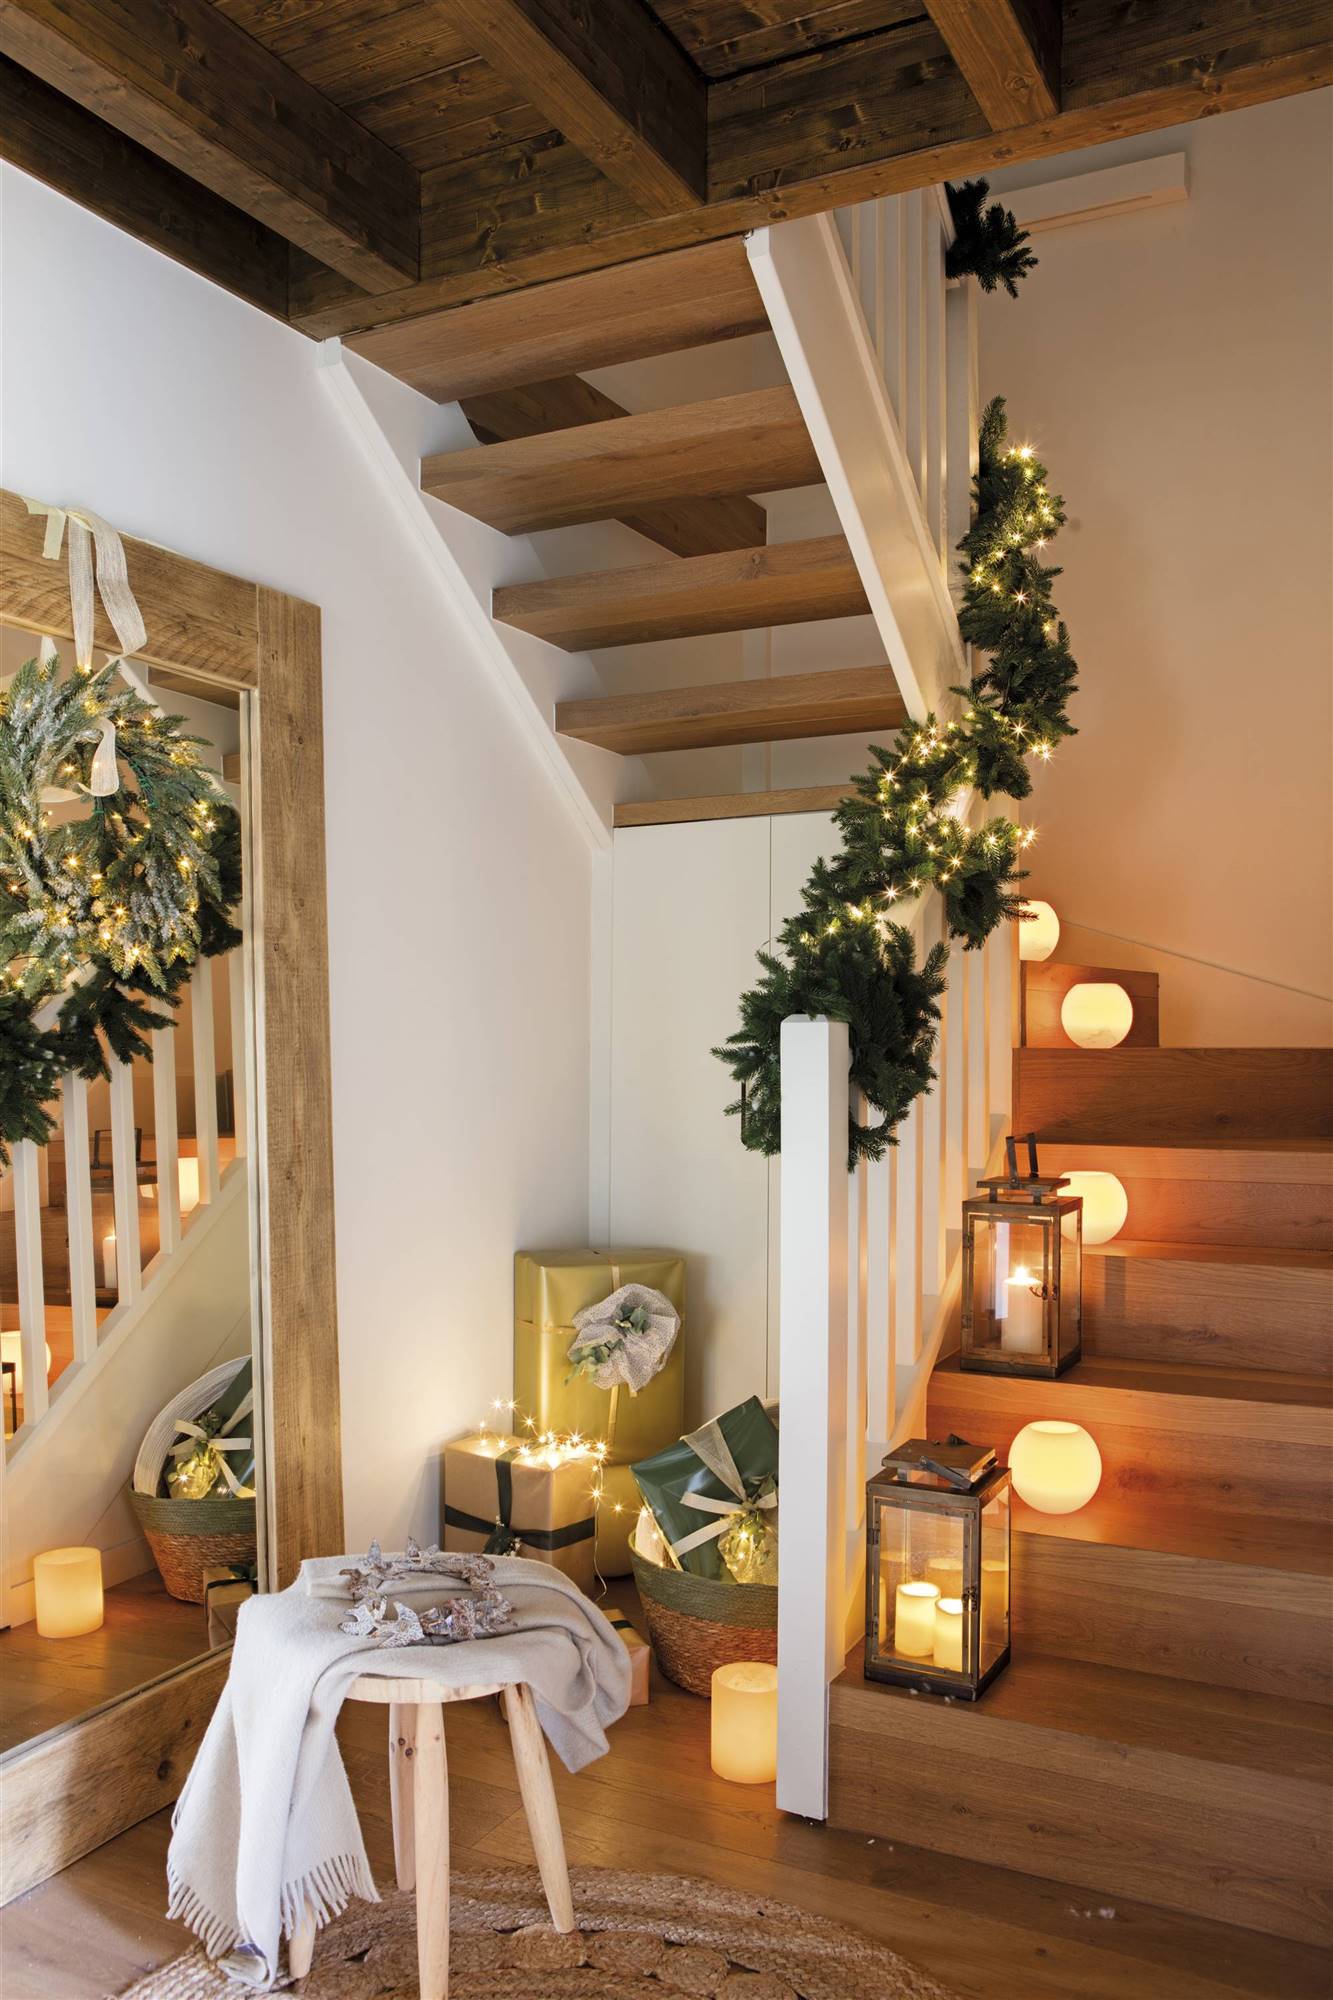 recibidor de navidad con las escaleras decoradas 00529186